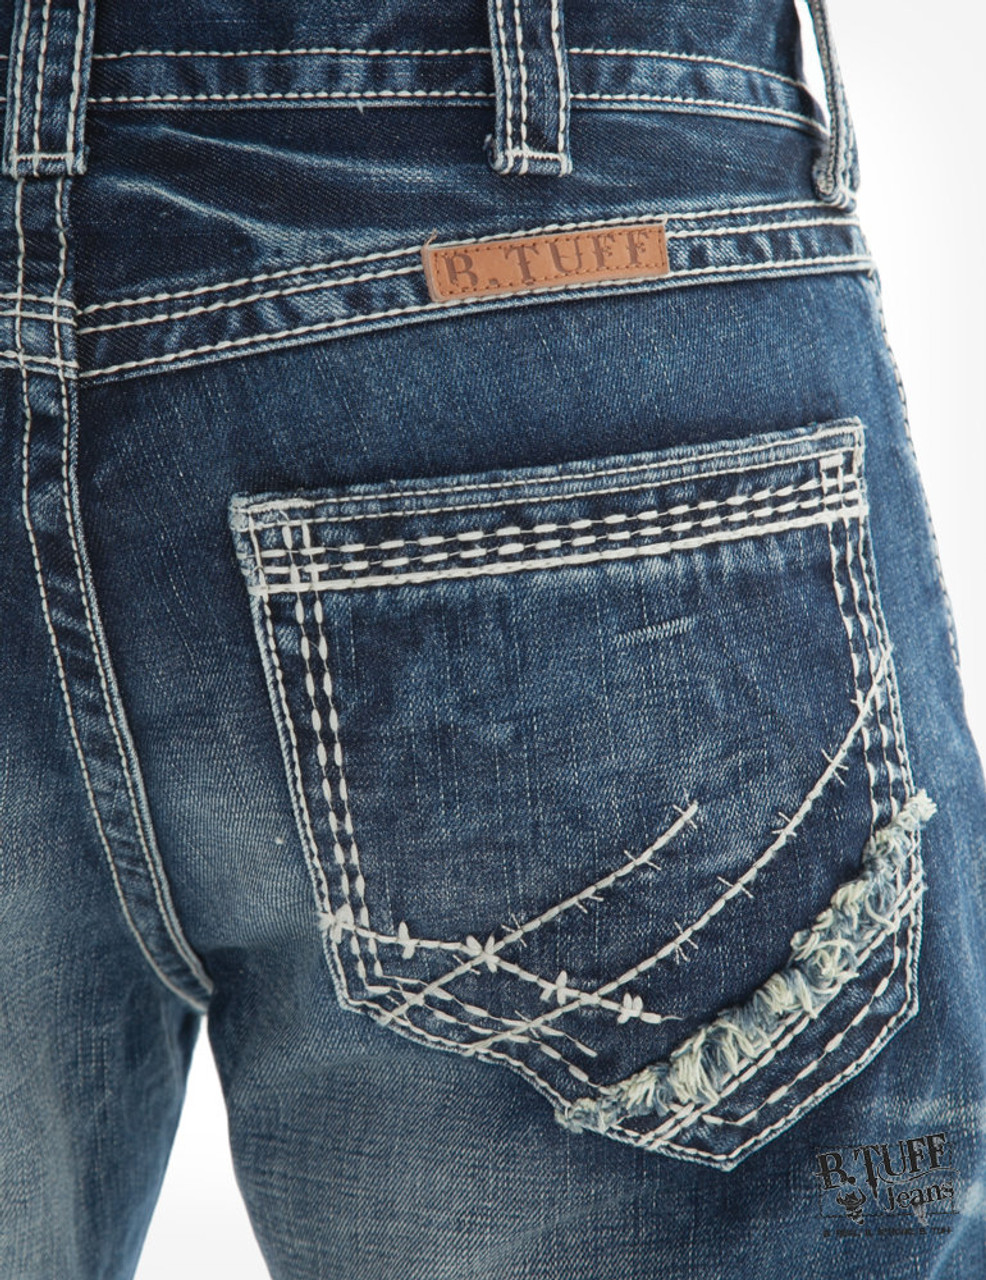 B Tuff Men's Jeans - Torque - Billy's Western Wear